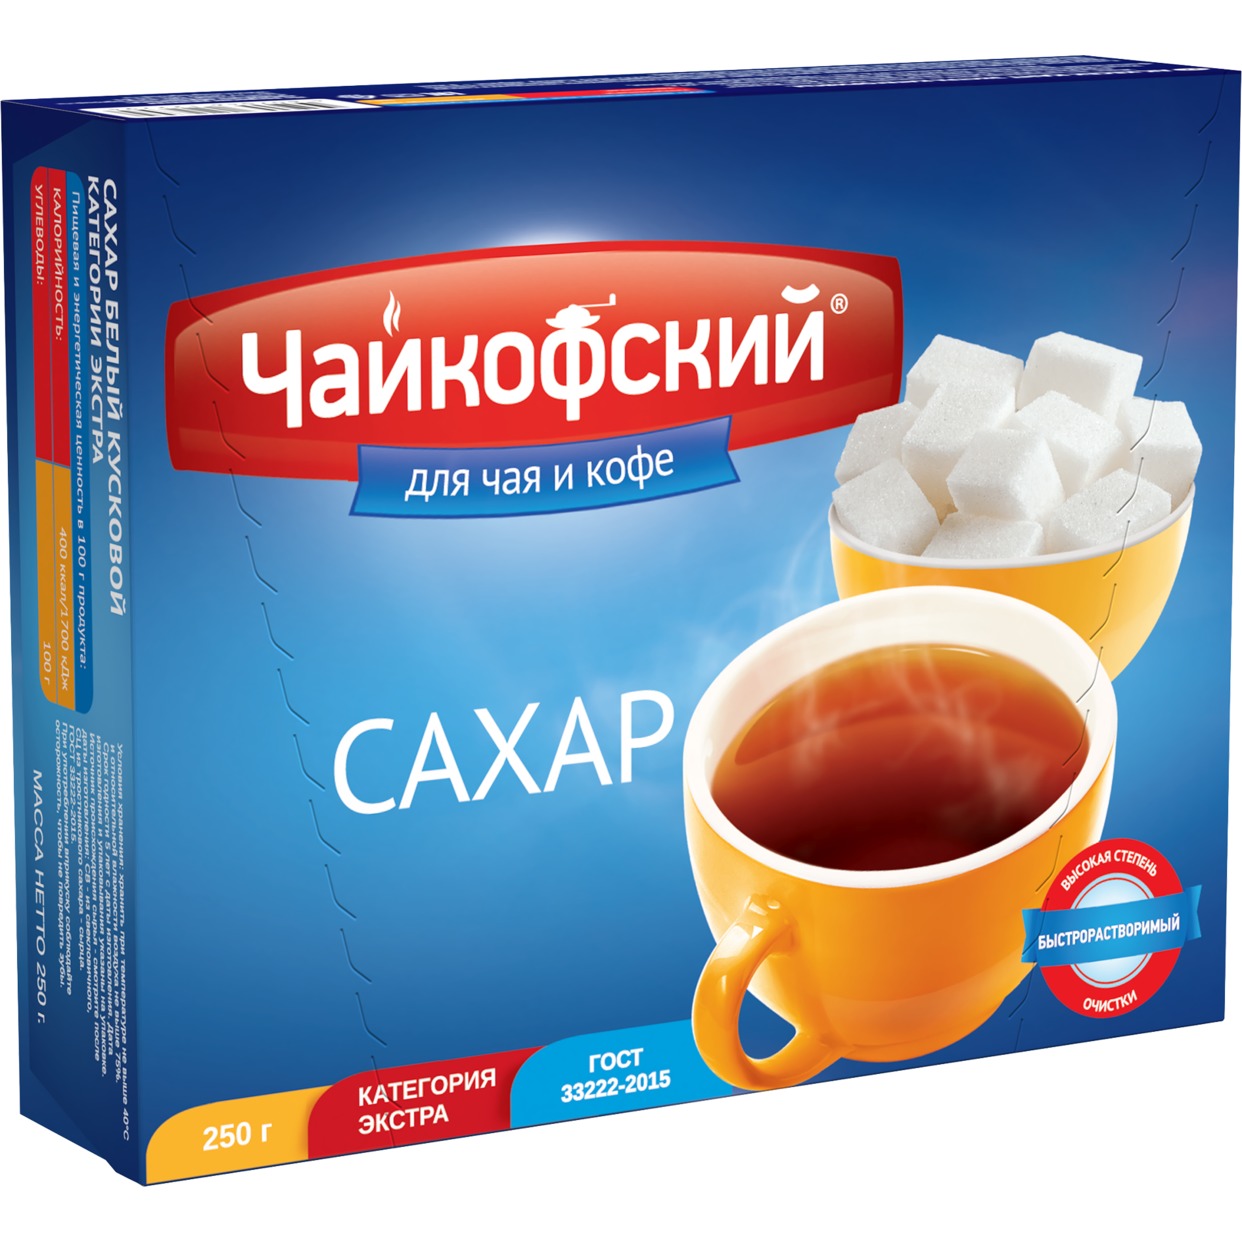 Сахар Чайкофский для чая и кофе рафинад быстрорастворимый 250 г в .